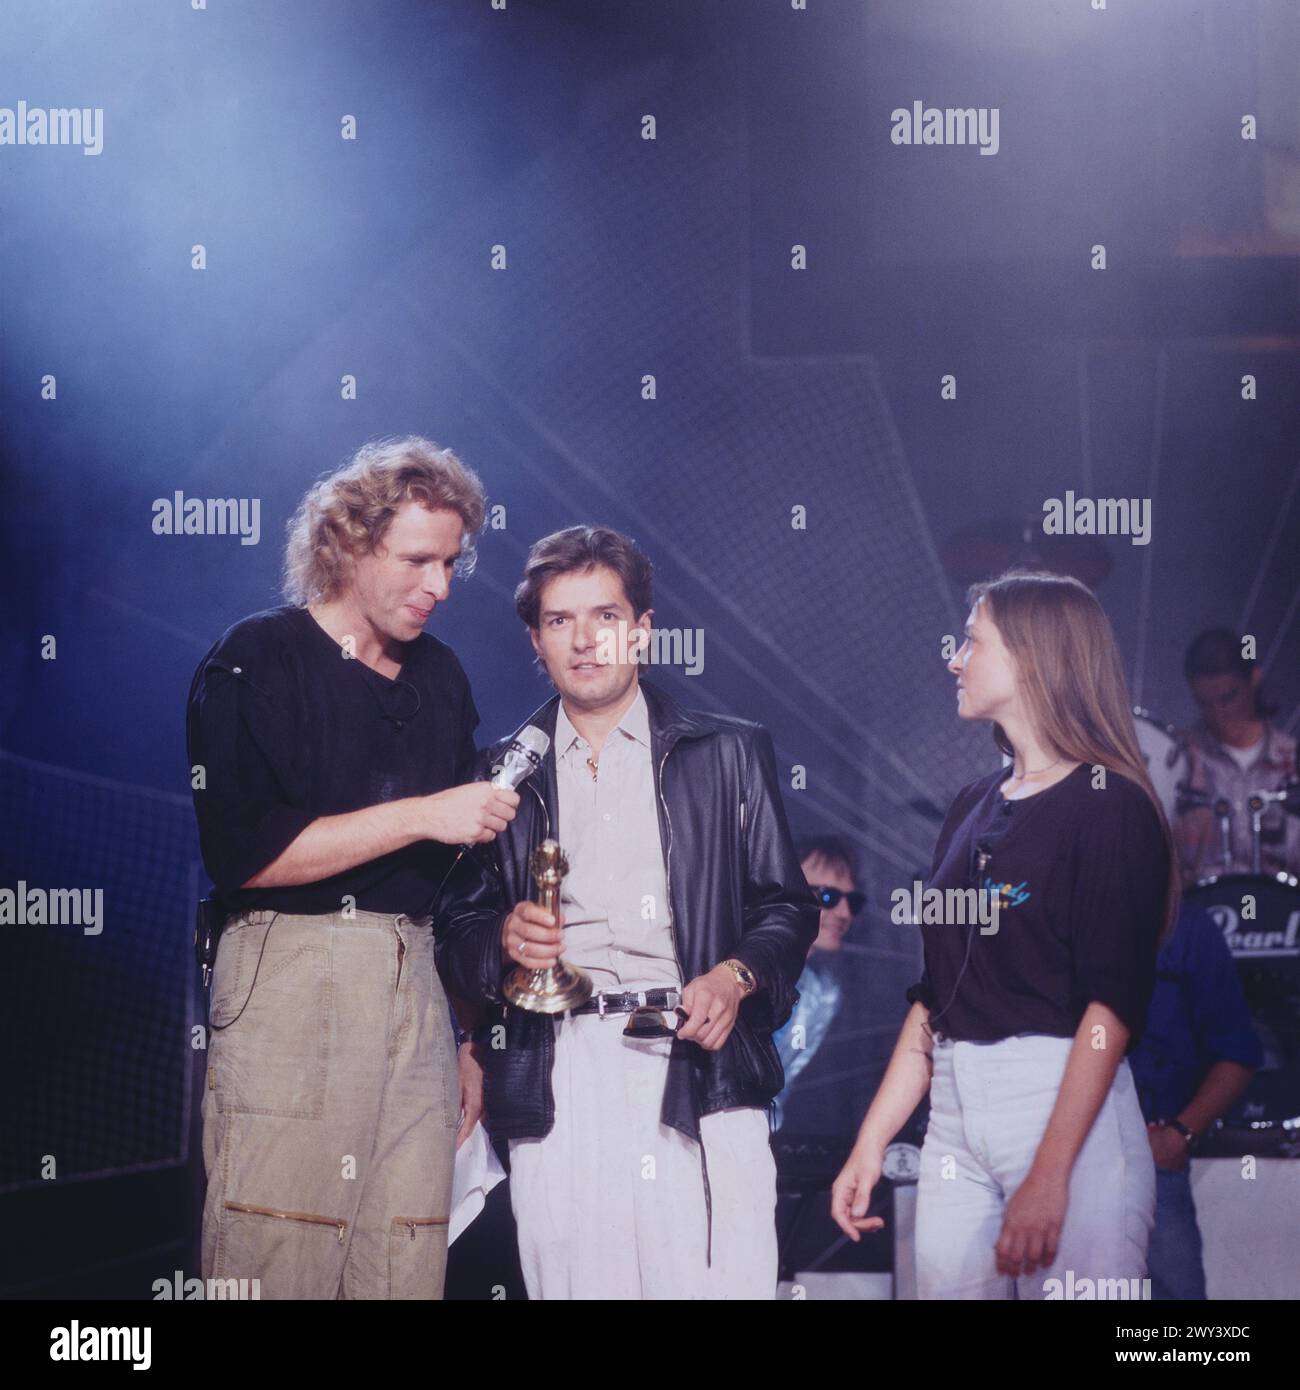 NA, SIEHSTE! TV Personality Show mit Musik und Gästen, von der Internationalen Funkausstellung a Berlino, 1987, moderatore: Thomas Gottschalk mit dem österreichischen Pop Sänger Falco. Foto Stock